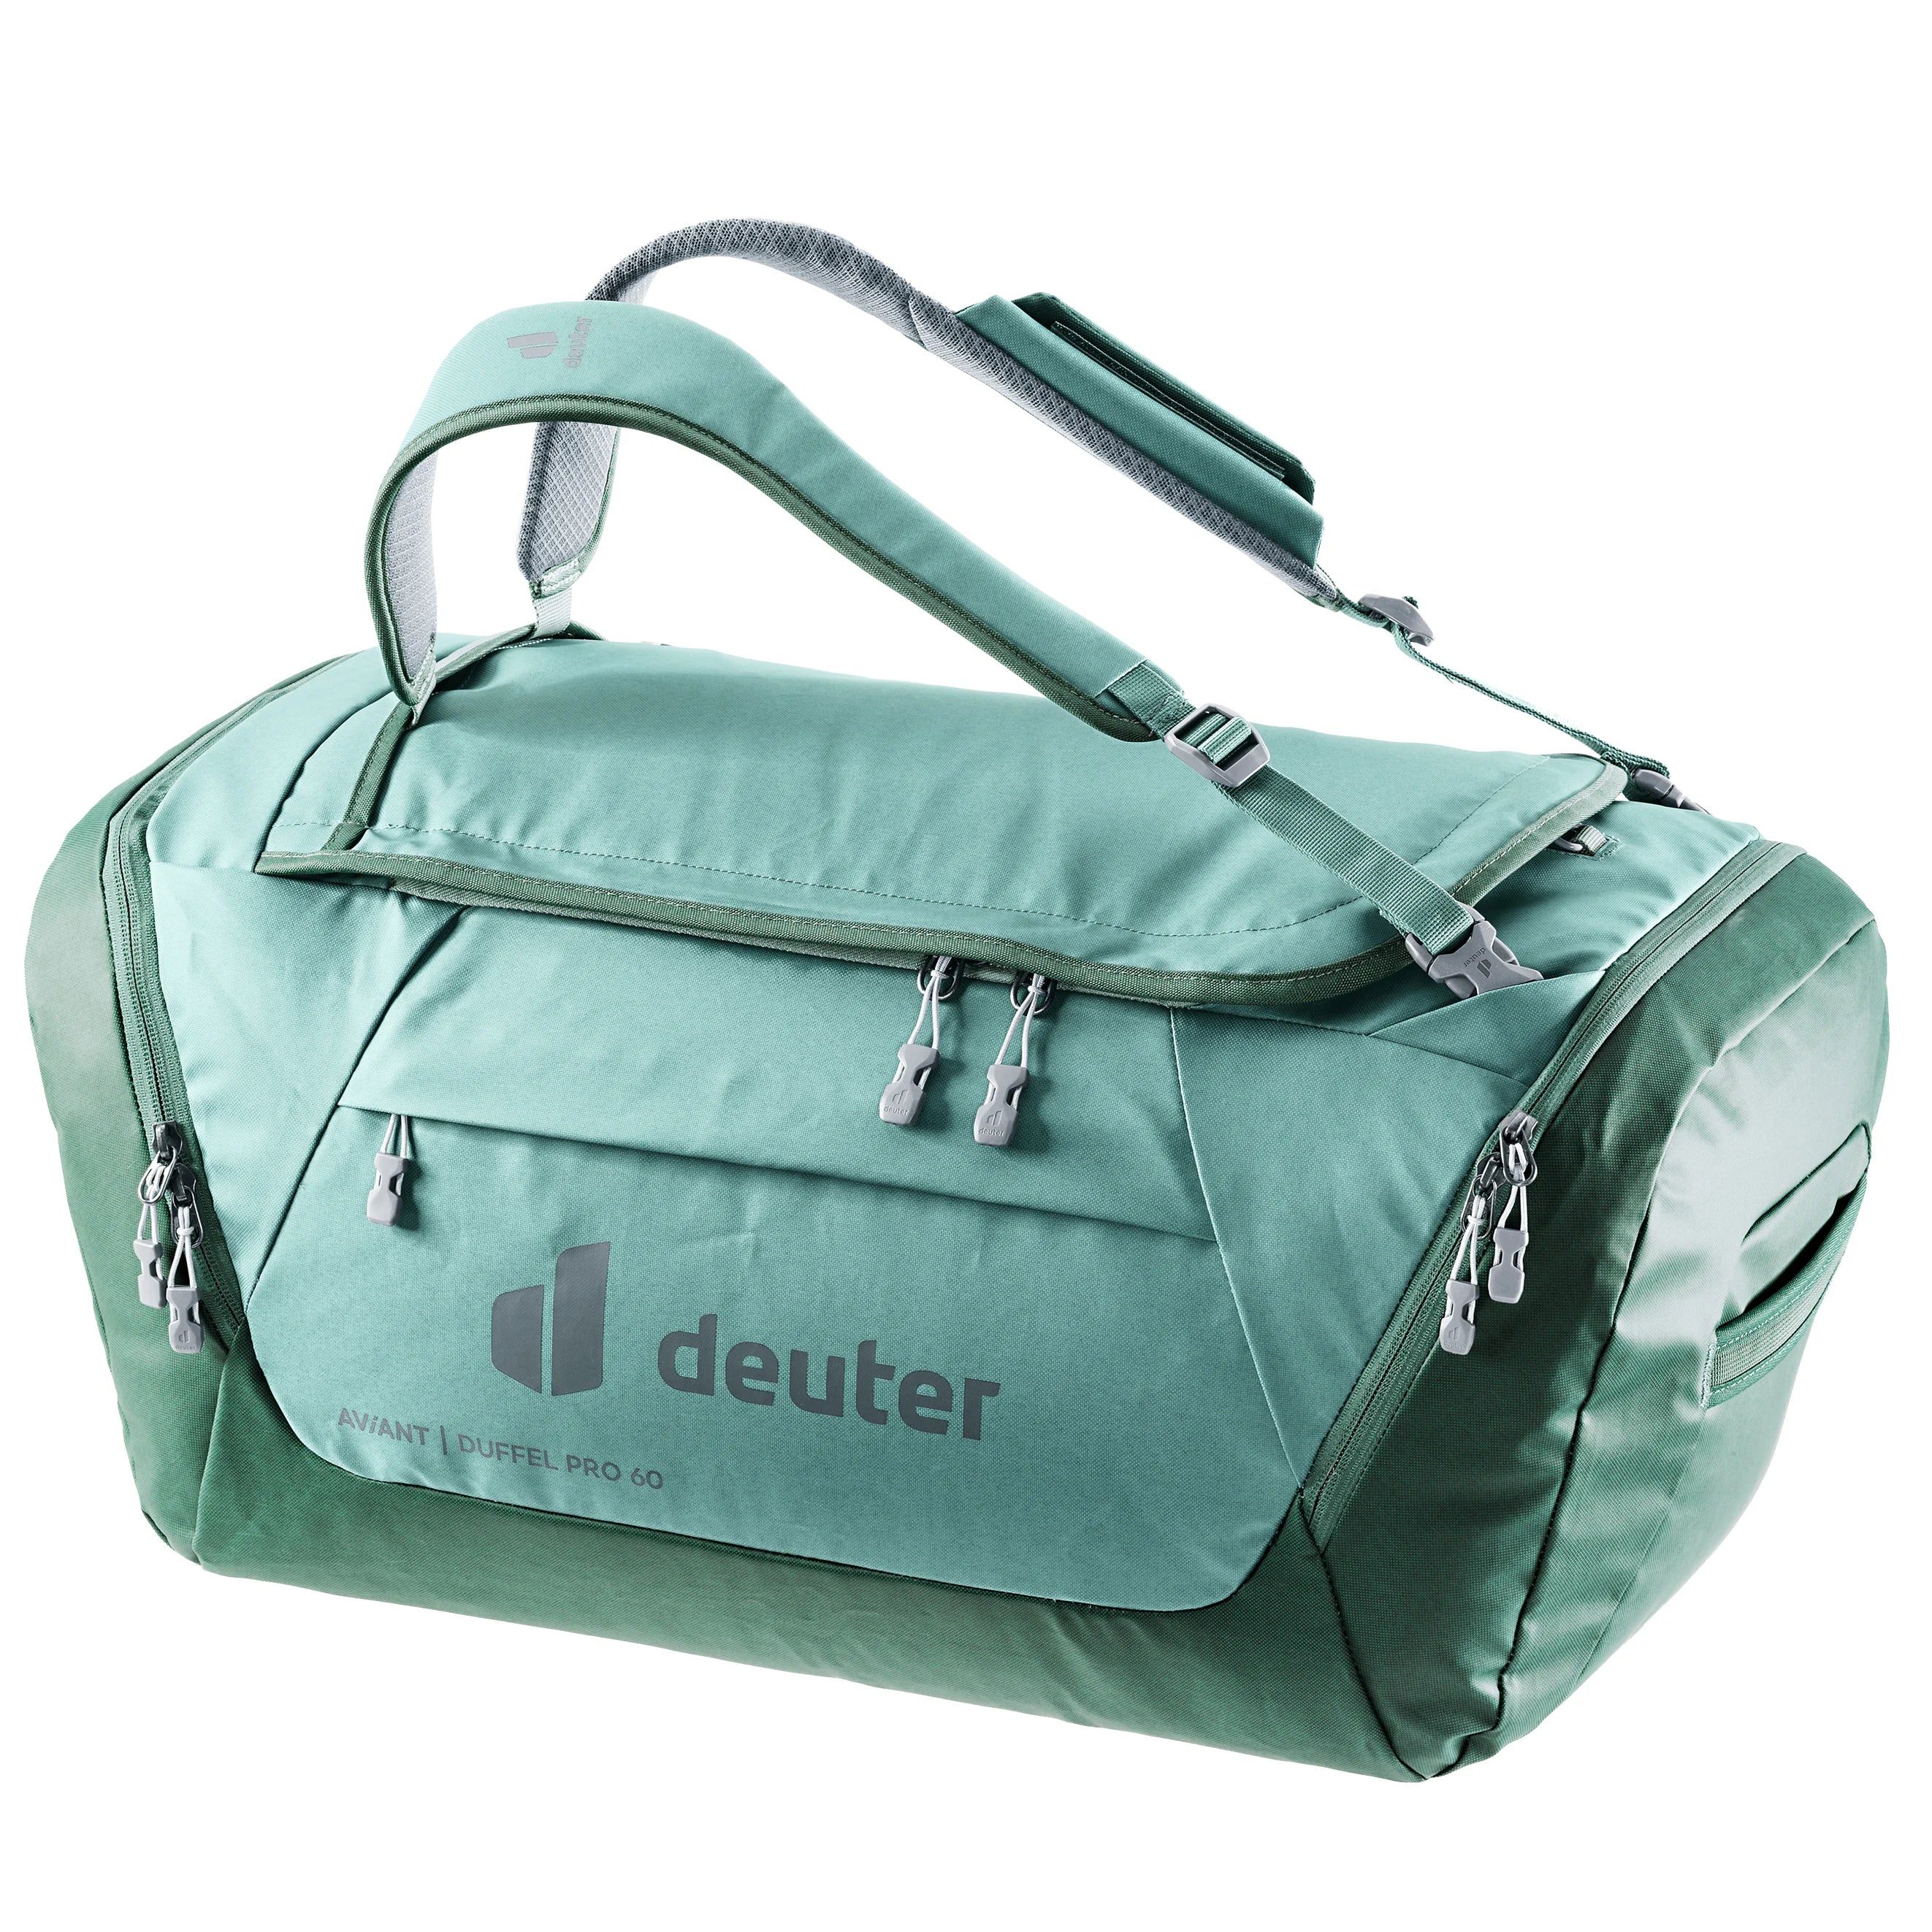 Deuter Travel Aviant Duffel Pro 60 Reisetasche 66 cm - jade-seagreen